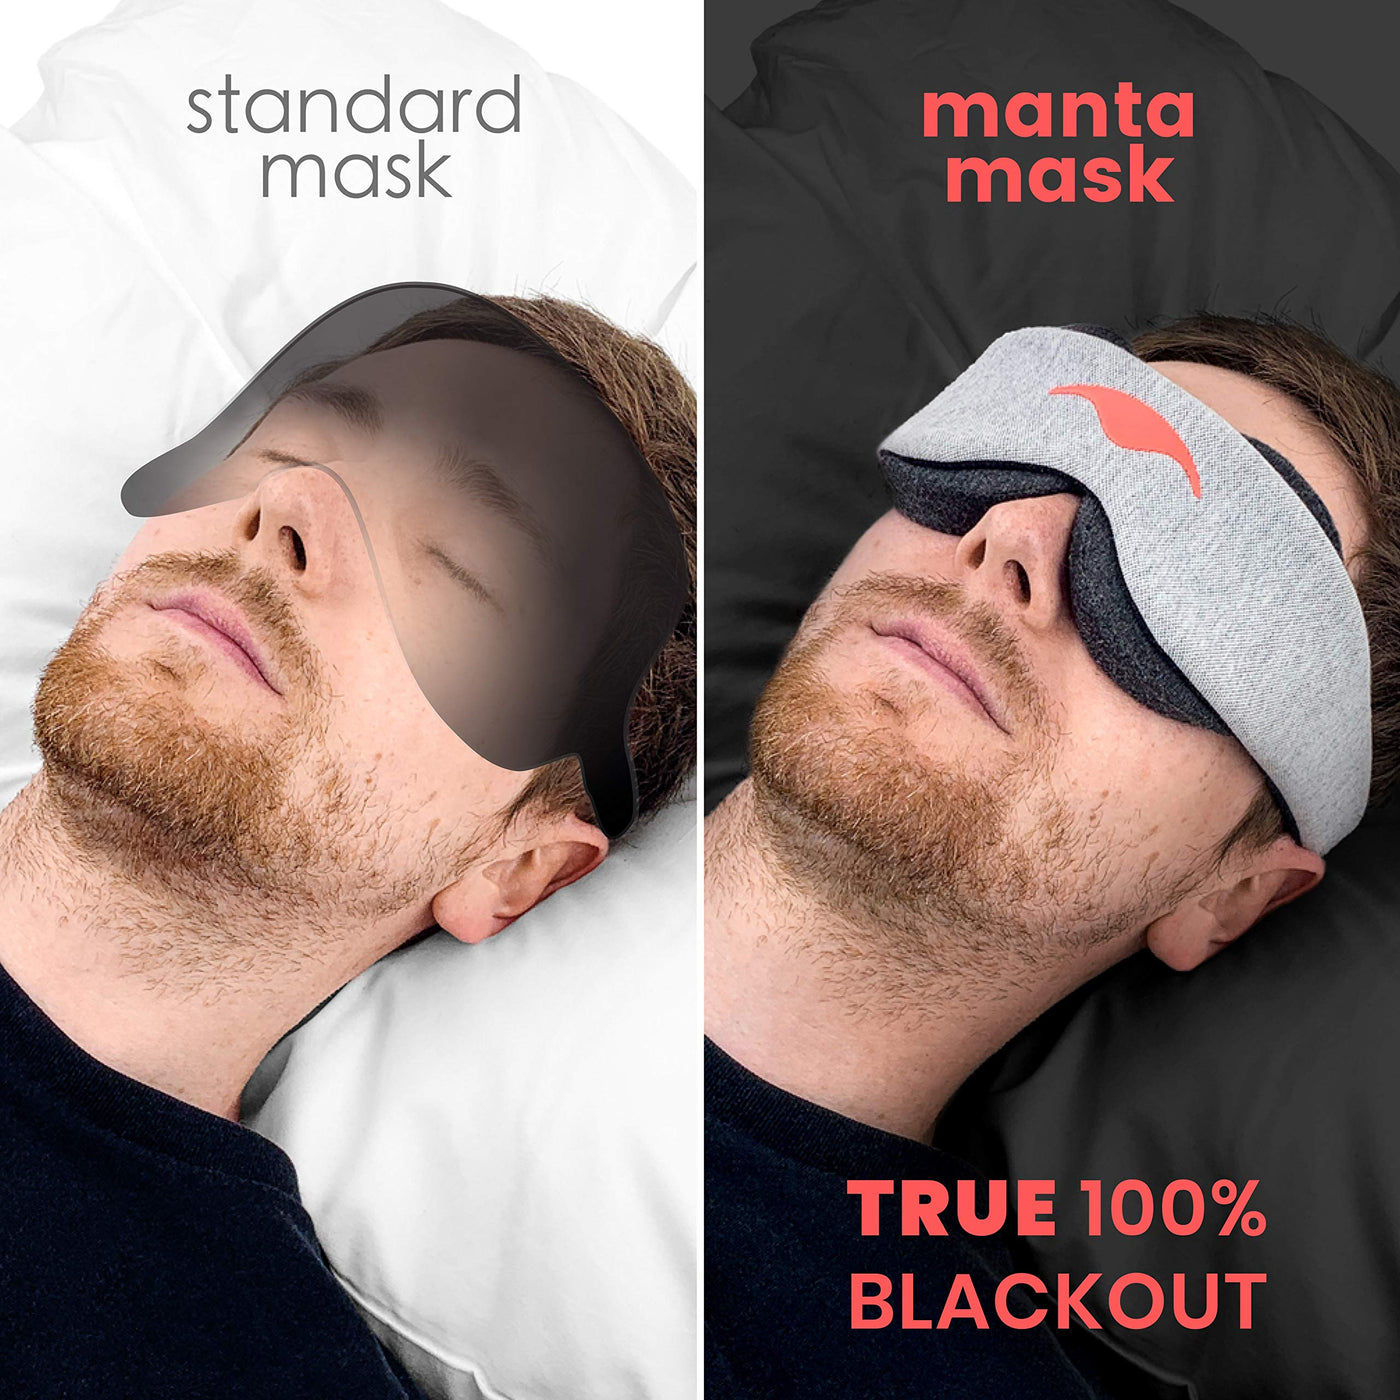 manta mask kickstarter